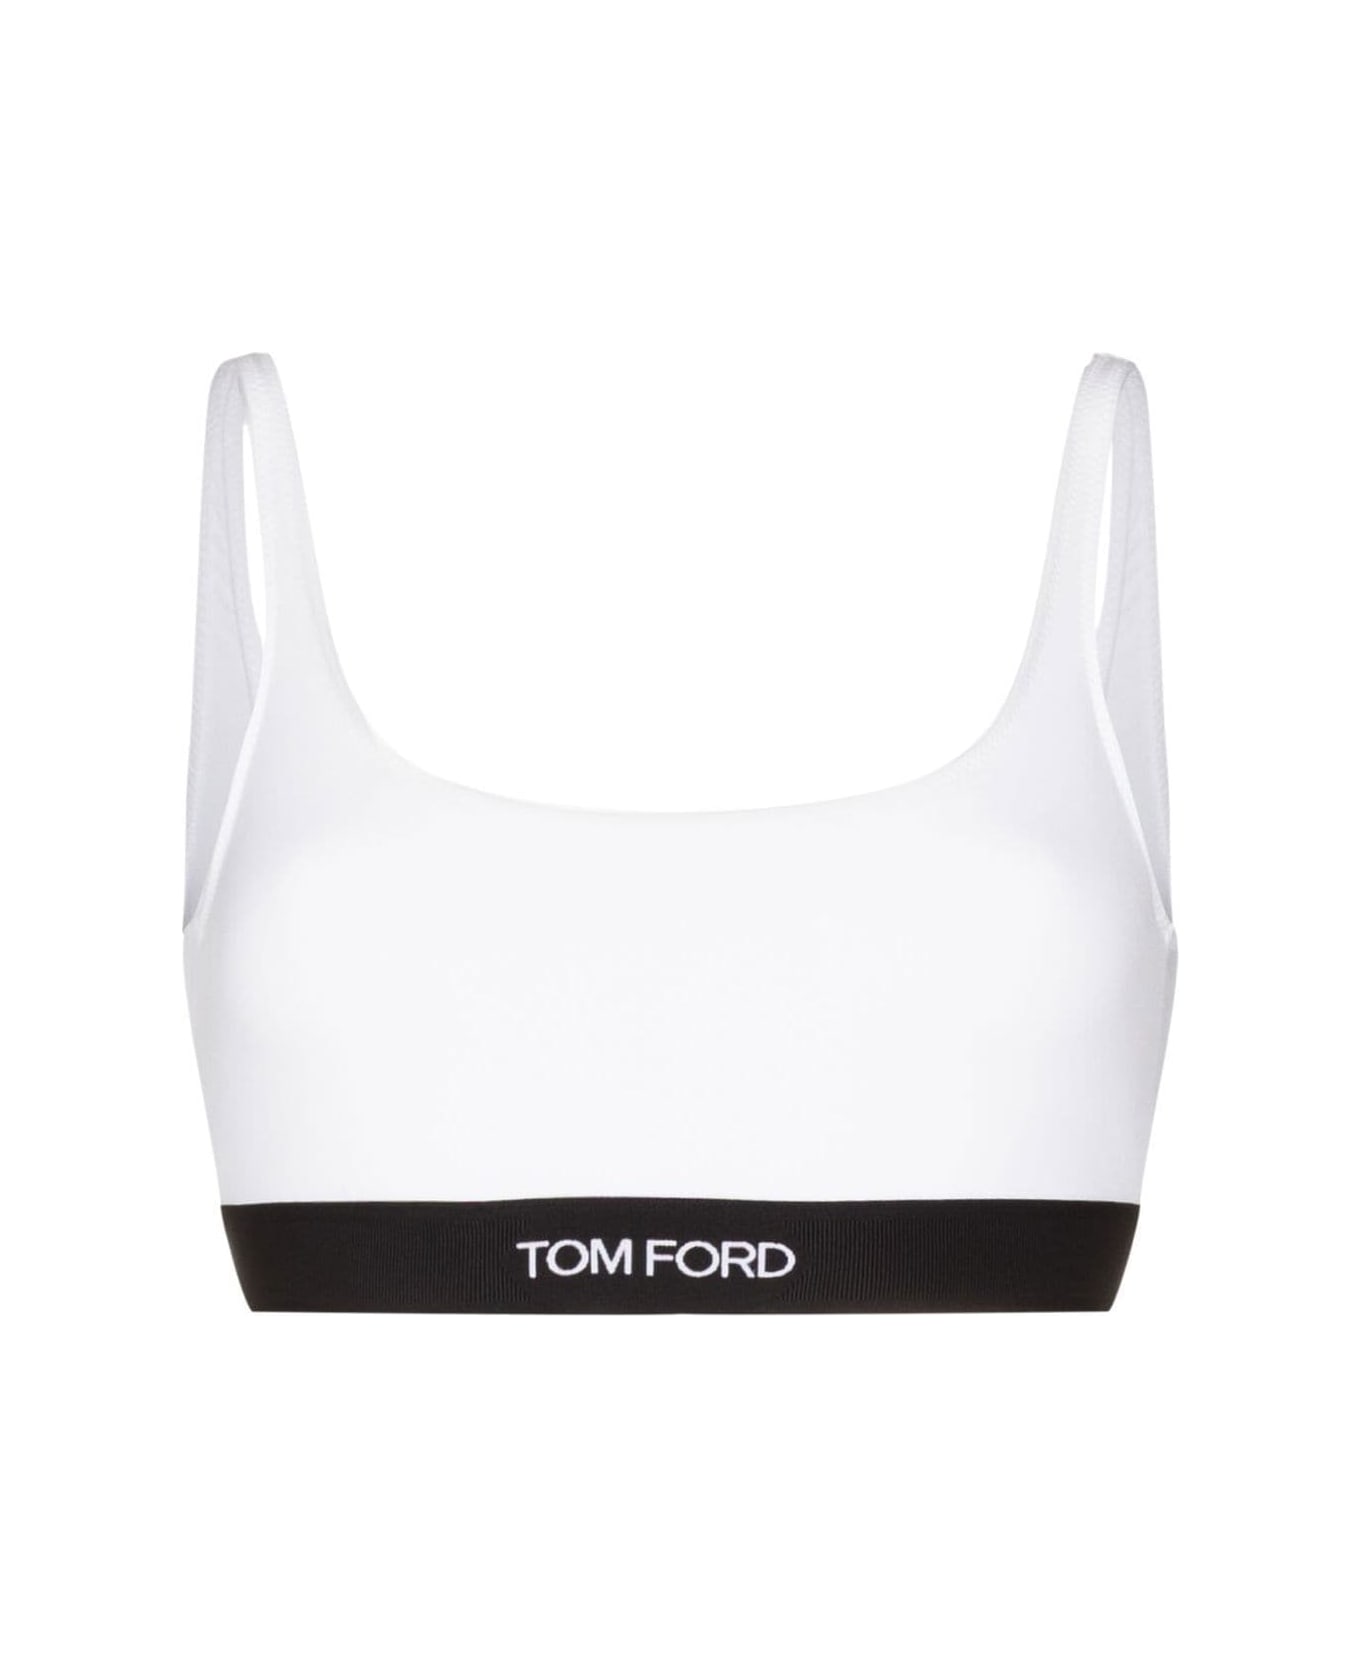 Tom Ford Underwear Bra - White ブラジャー